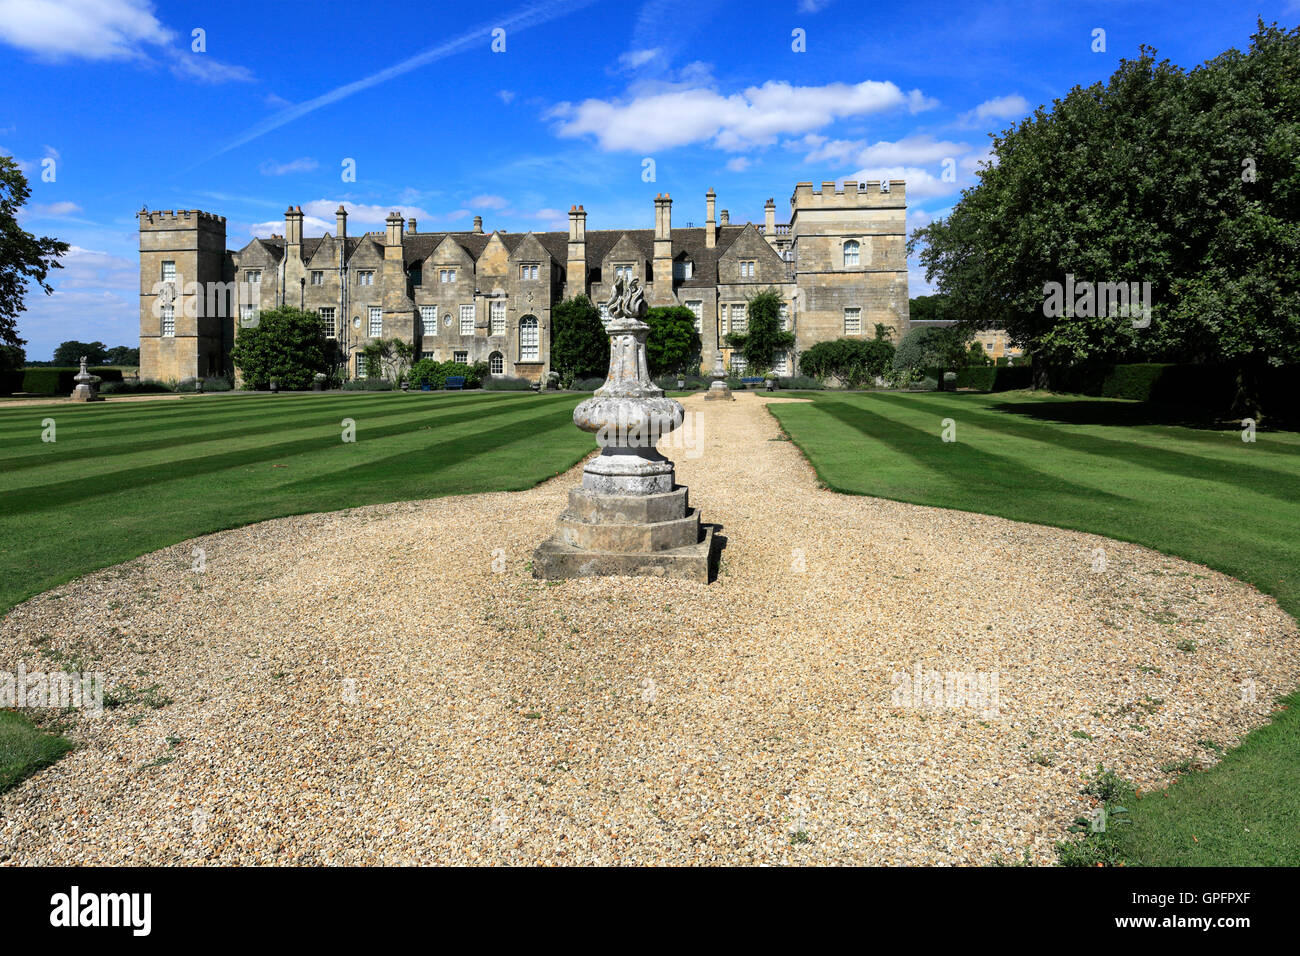 En verano, el castillo de Grimsthorpe y jardines, Lincolnshire, Inglaterra, Reino Unido. Foto de stock